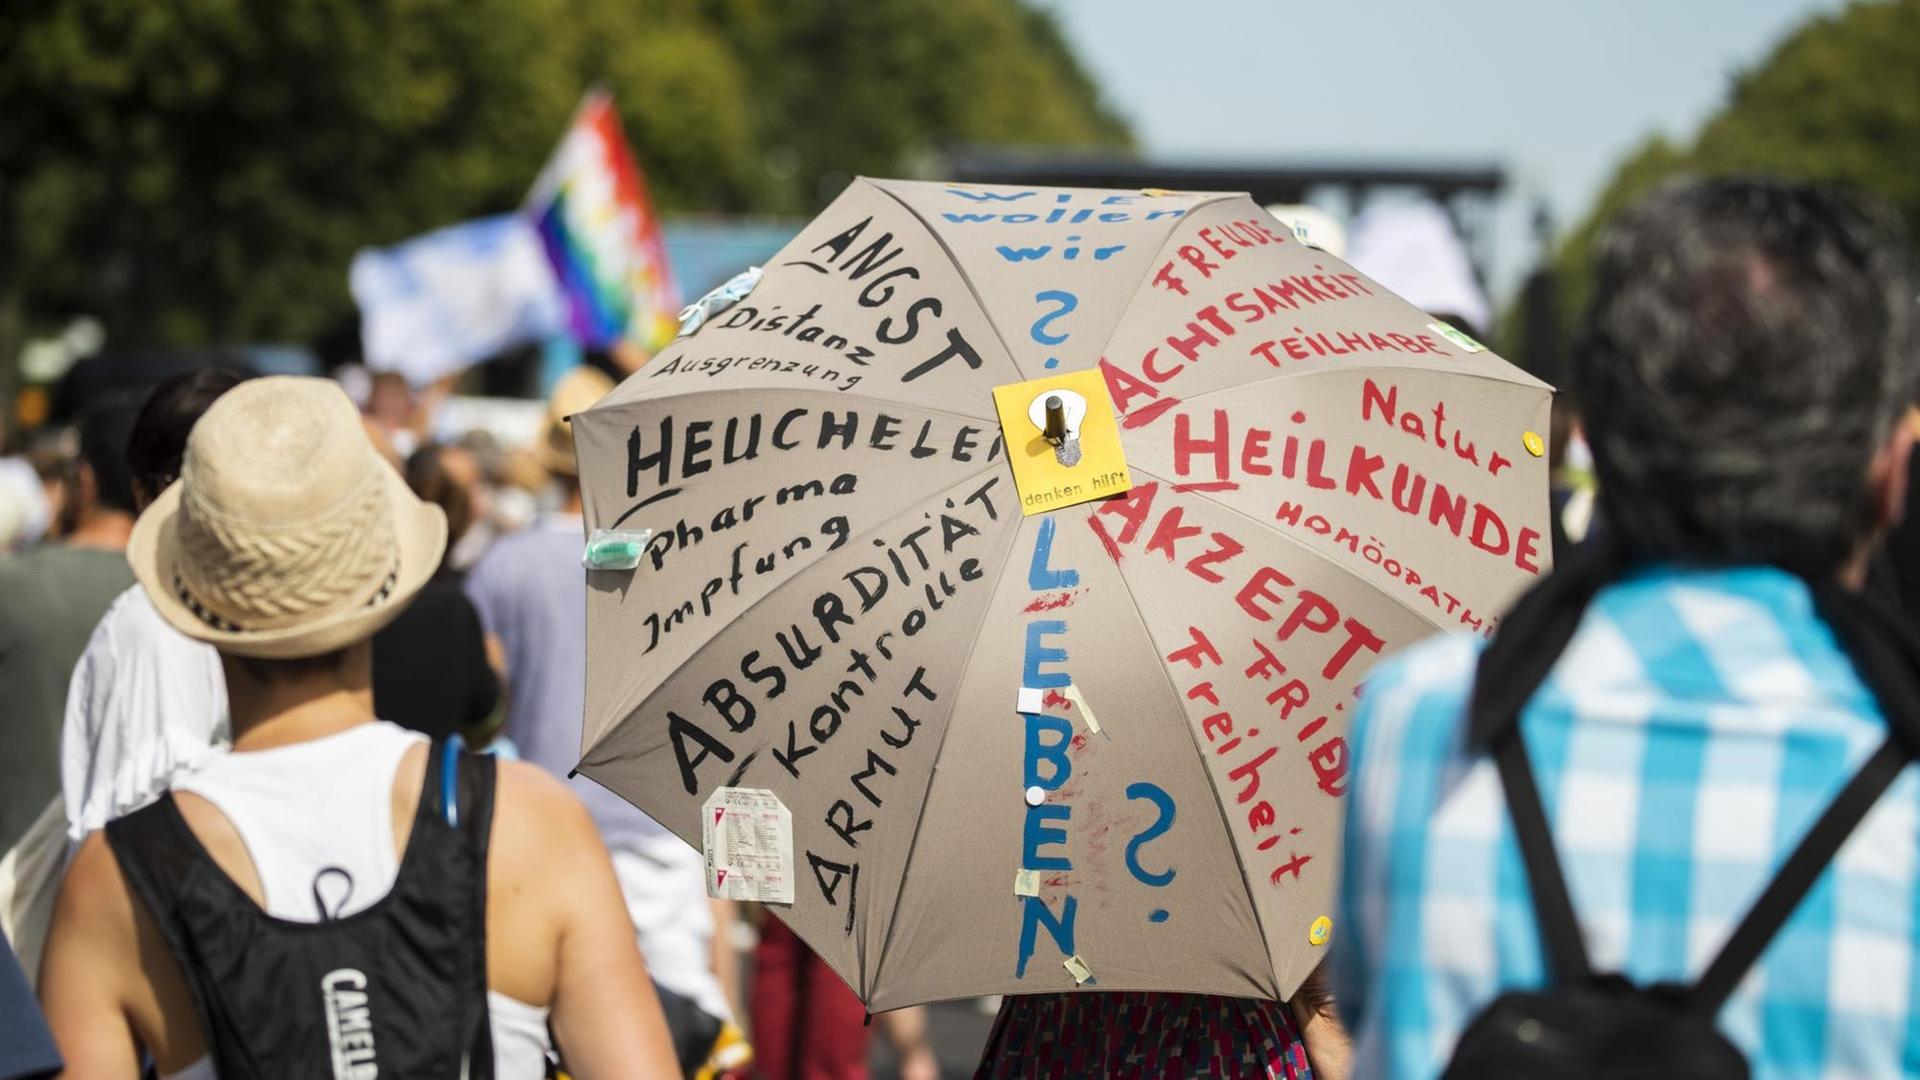 Anti-Corona-Demonstration in Berlin. Auf einem Schirm steht u. a.: "Wie wollen wir leben?"